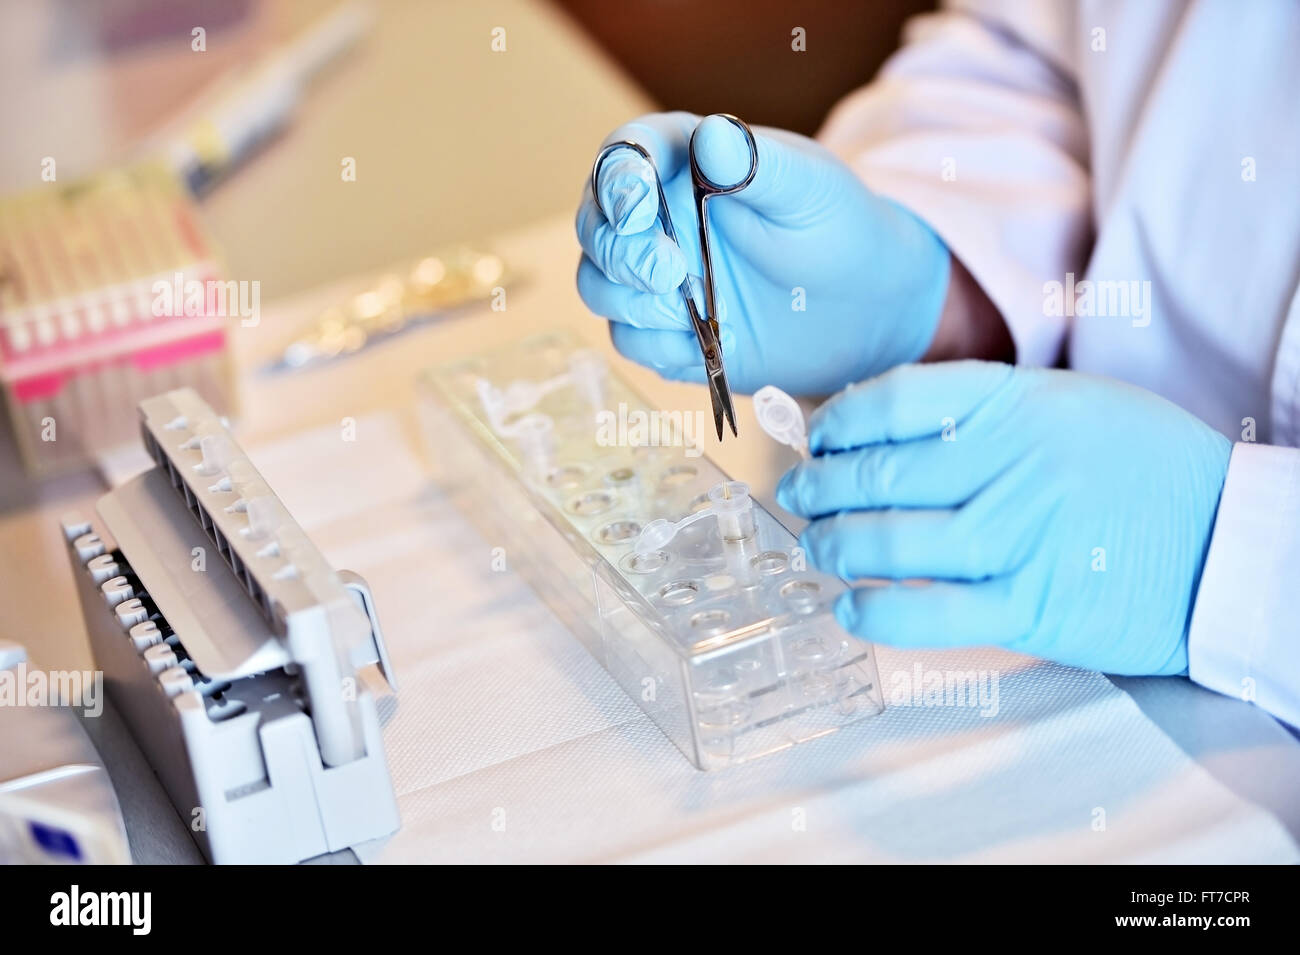 Détail avec mains chercheur travaillant avec compte-gouttes et des tubes médicaux dans un laboratoire d'effectuer un test ADN Banque D'Images